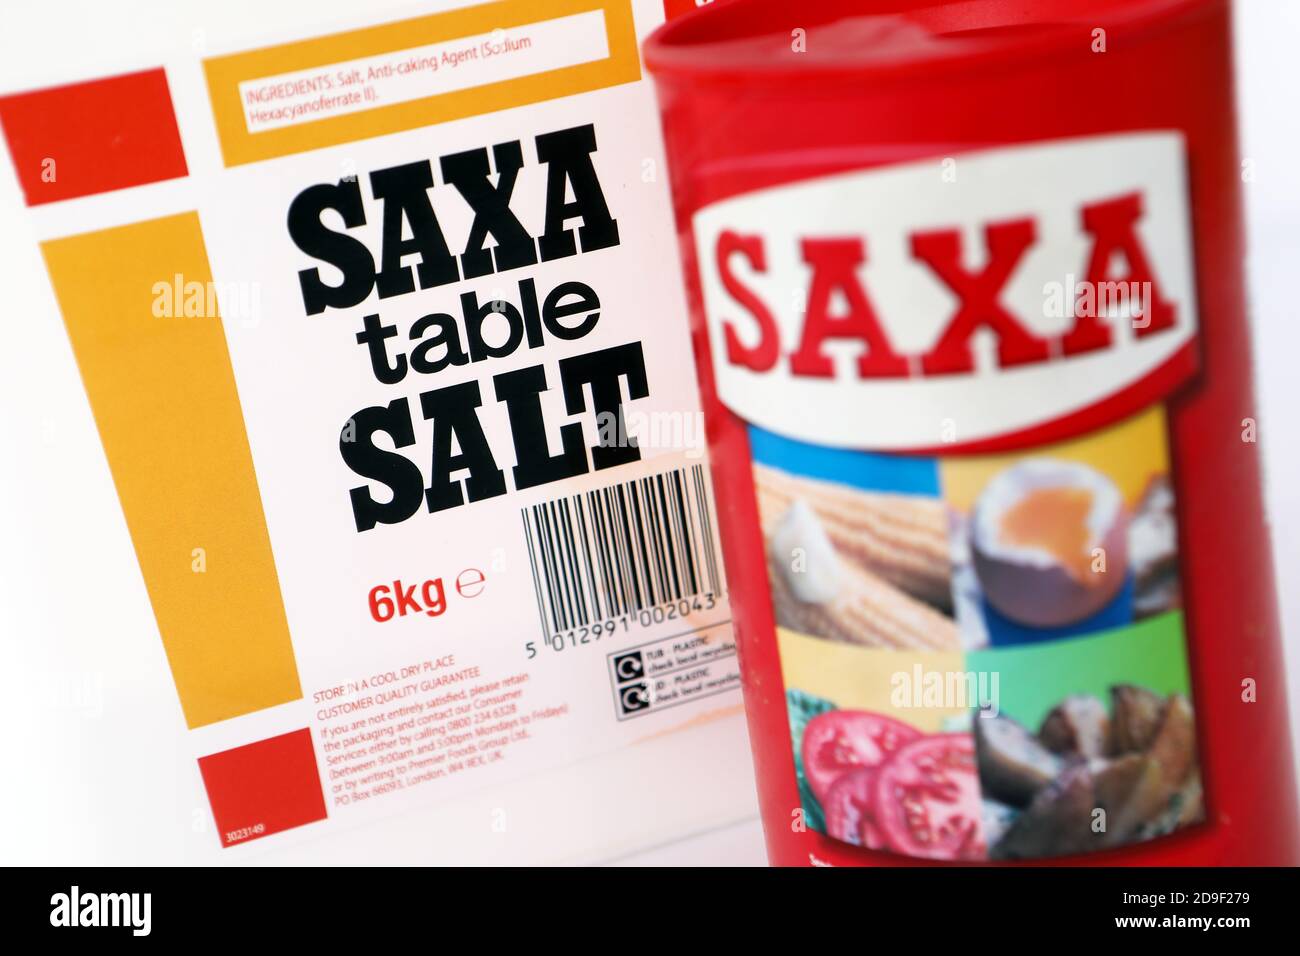 Saxa table salt Stock Photo